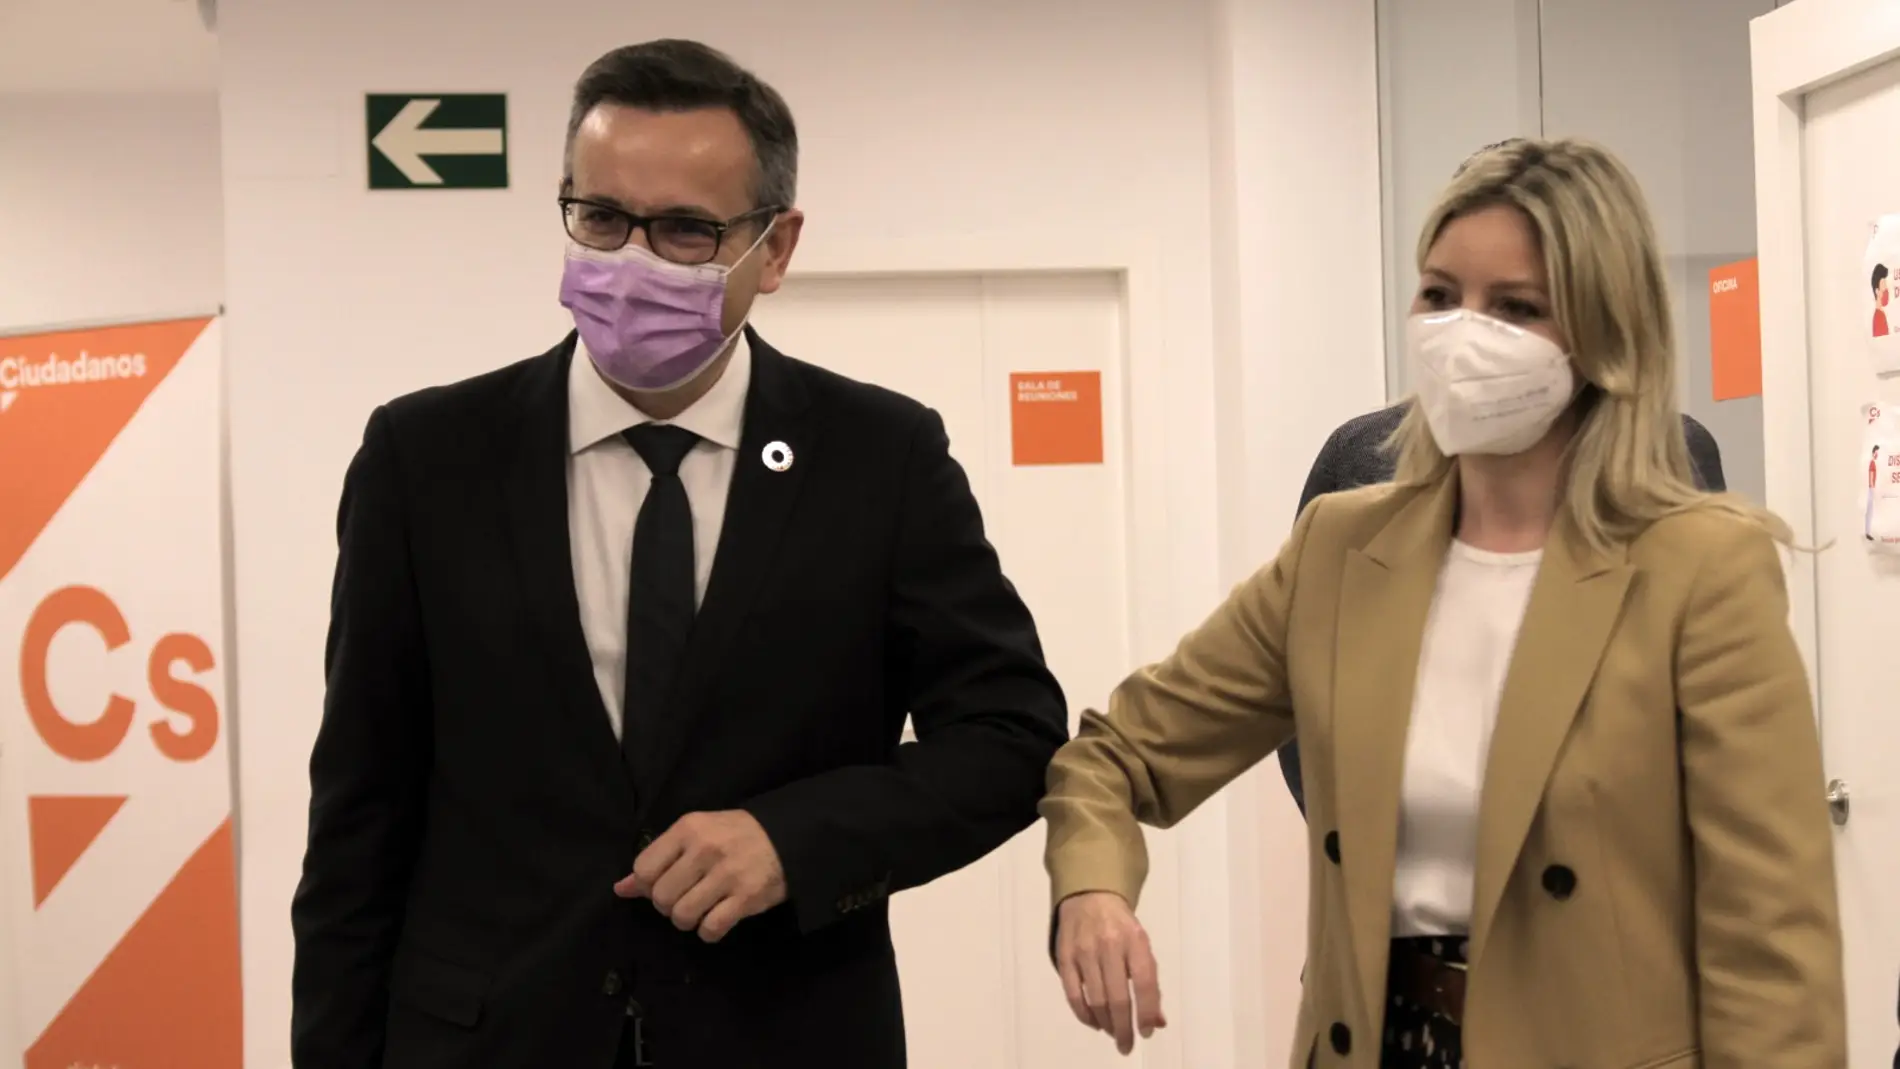 PSOE y Ciudadanos reiteran que el Alcalde de Murcia, si prospera la moción de censura, será el socialista José Antonio Serrano hasta final de legislatura